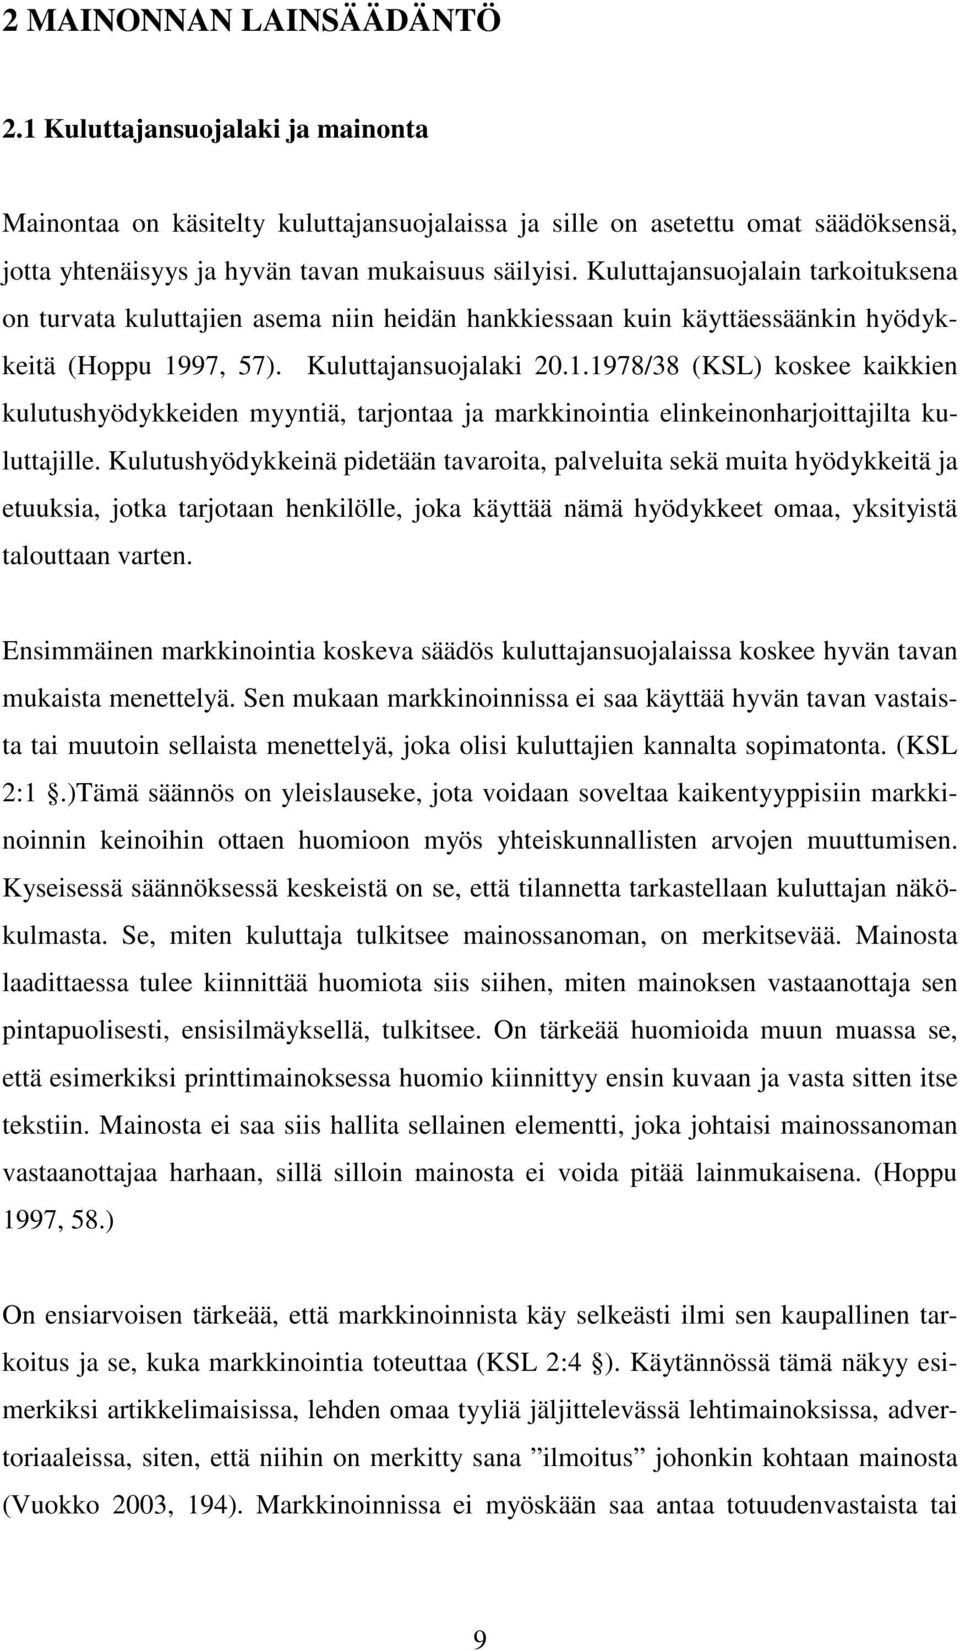 97, 57). Kuluttajansuojalaki 20.1.1978/38 (KSL) koskee kaikkien kulutushyödykkeiden myyntiä, tarjontaa ja markkinointia elinkeinonharjoittajilta kuluttajille.